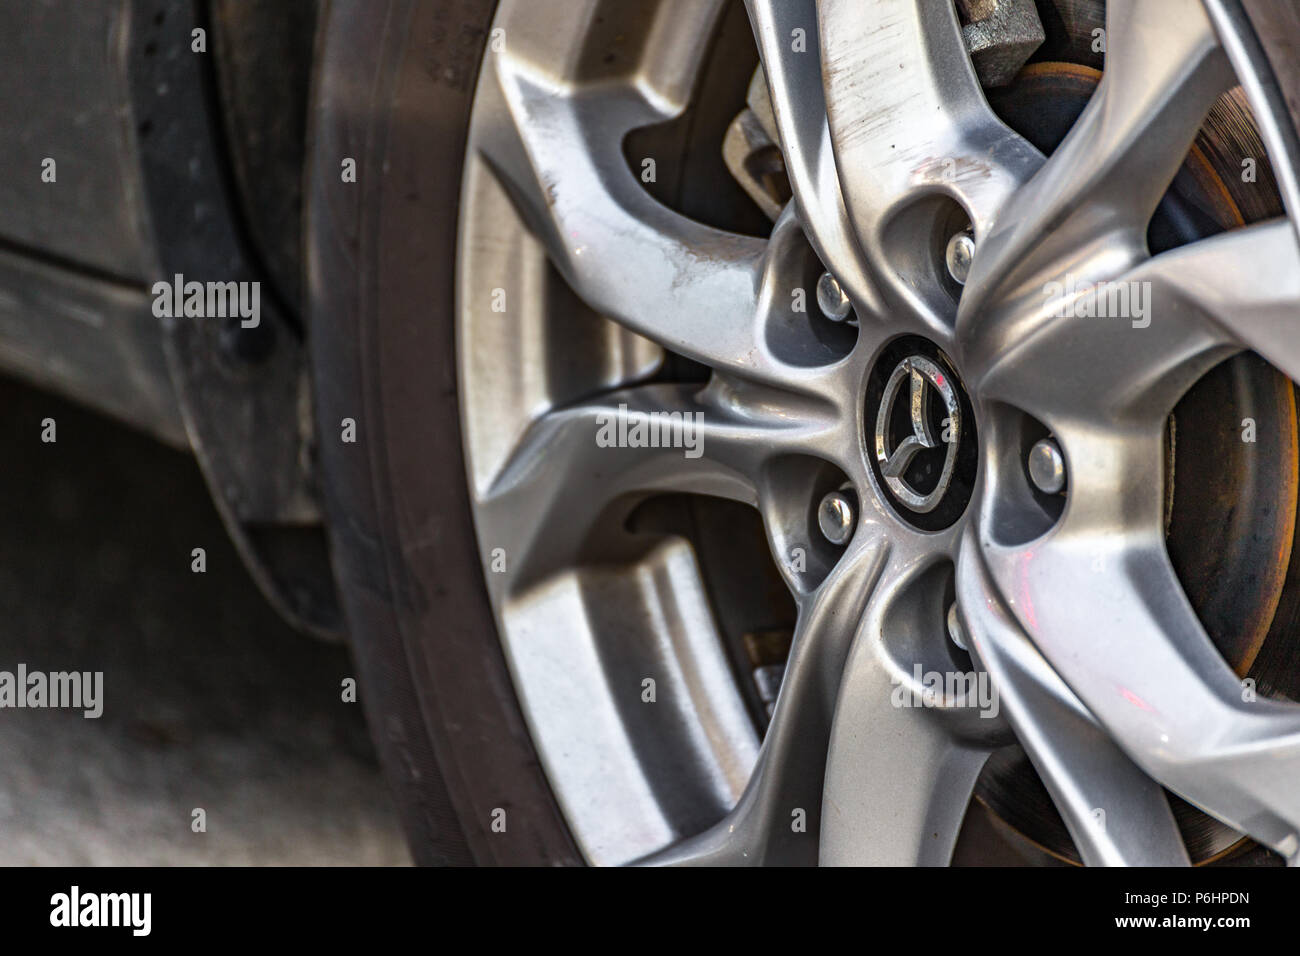 RAVENNA, ITALIE - 30 juin 2018 : La poussière et couvrir la Mazda logo sur une roue en alliage Banque D'Images